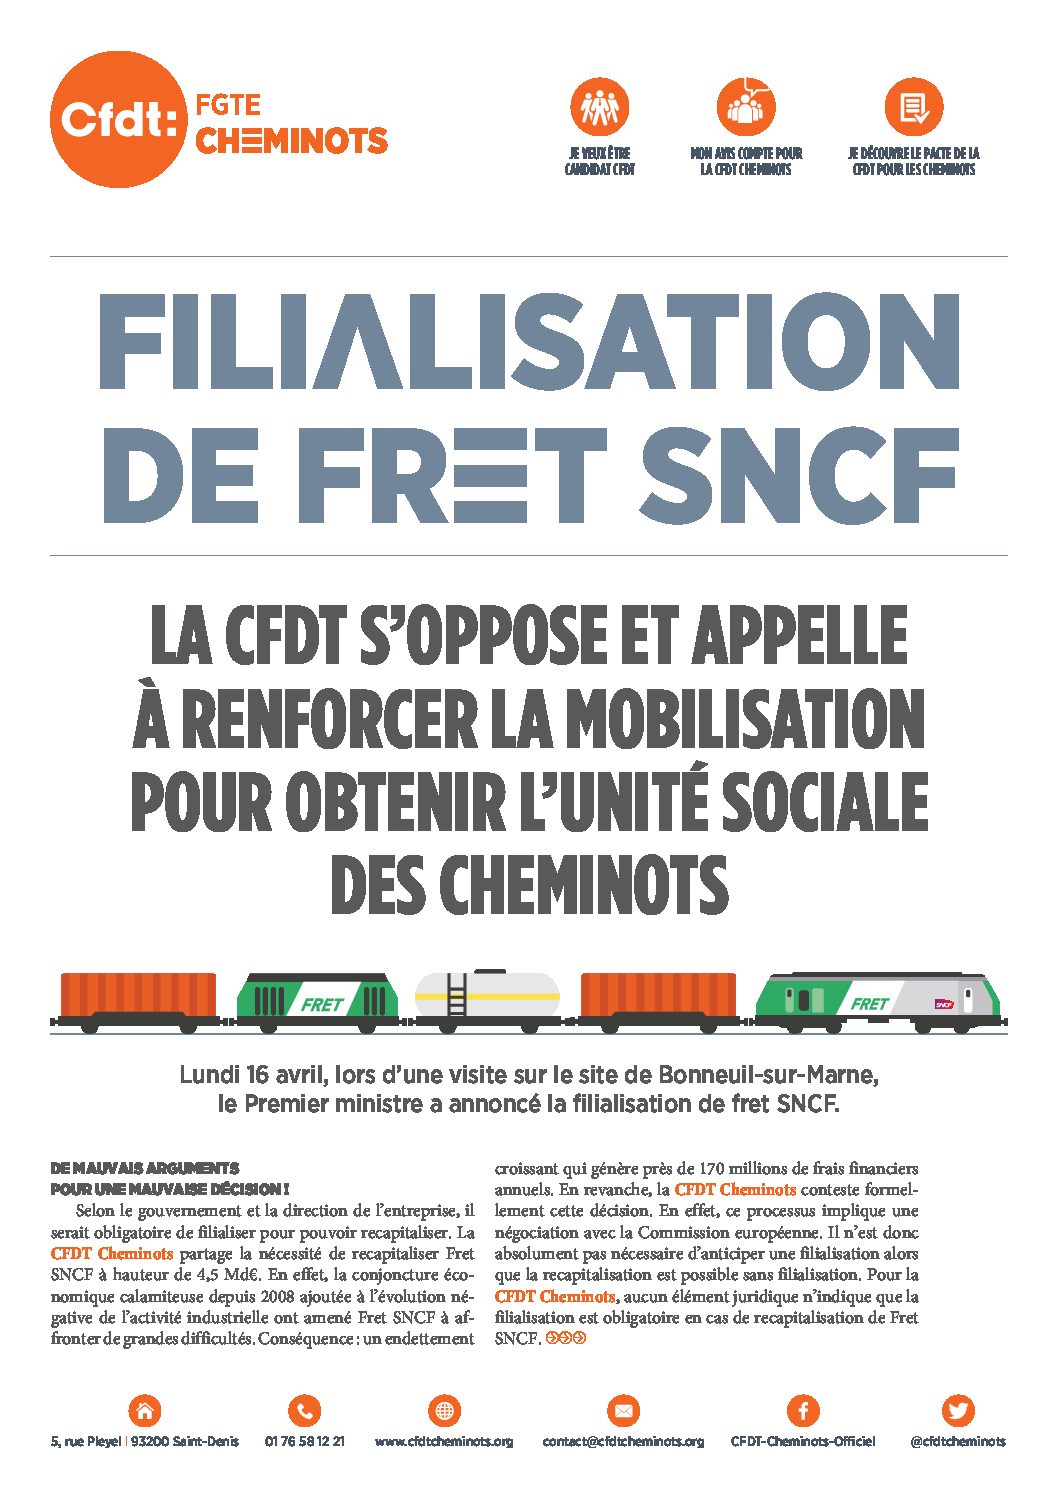 FILIALISATION DE FRET SNCF